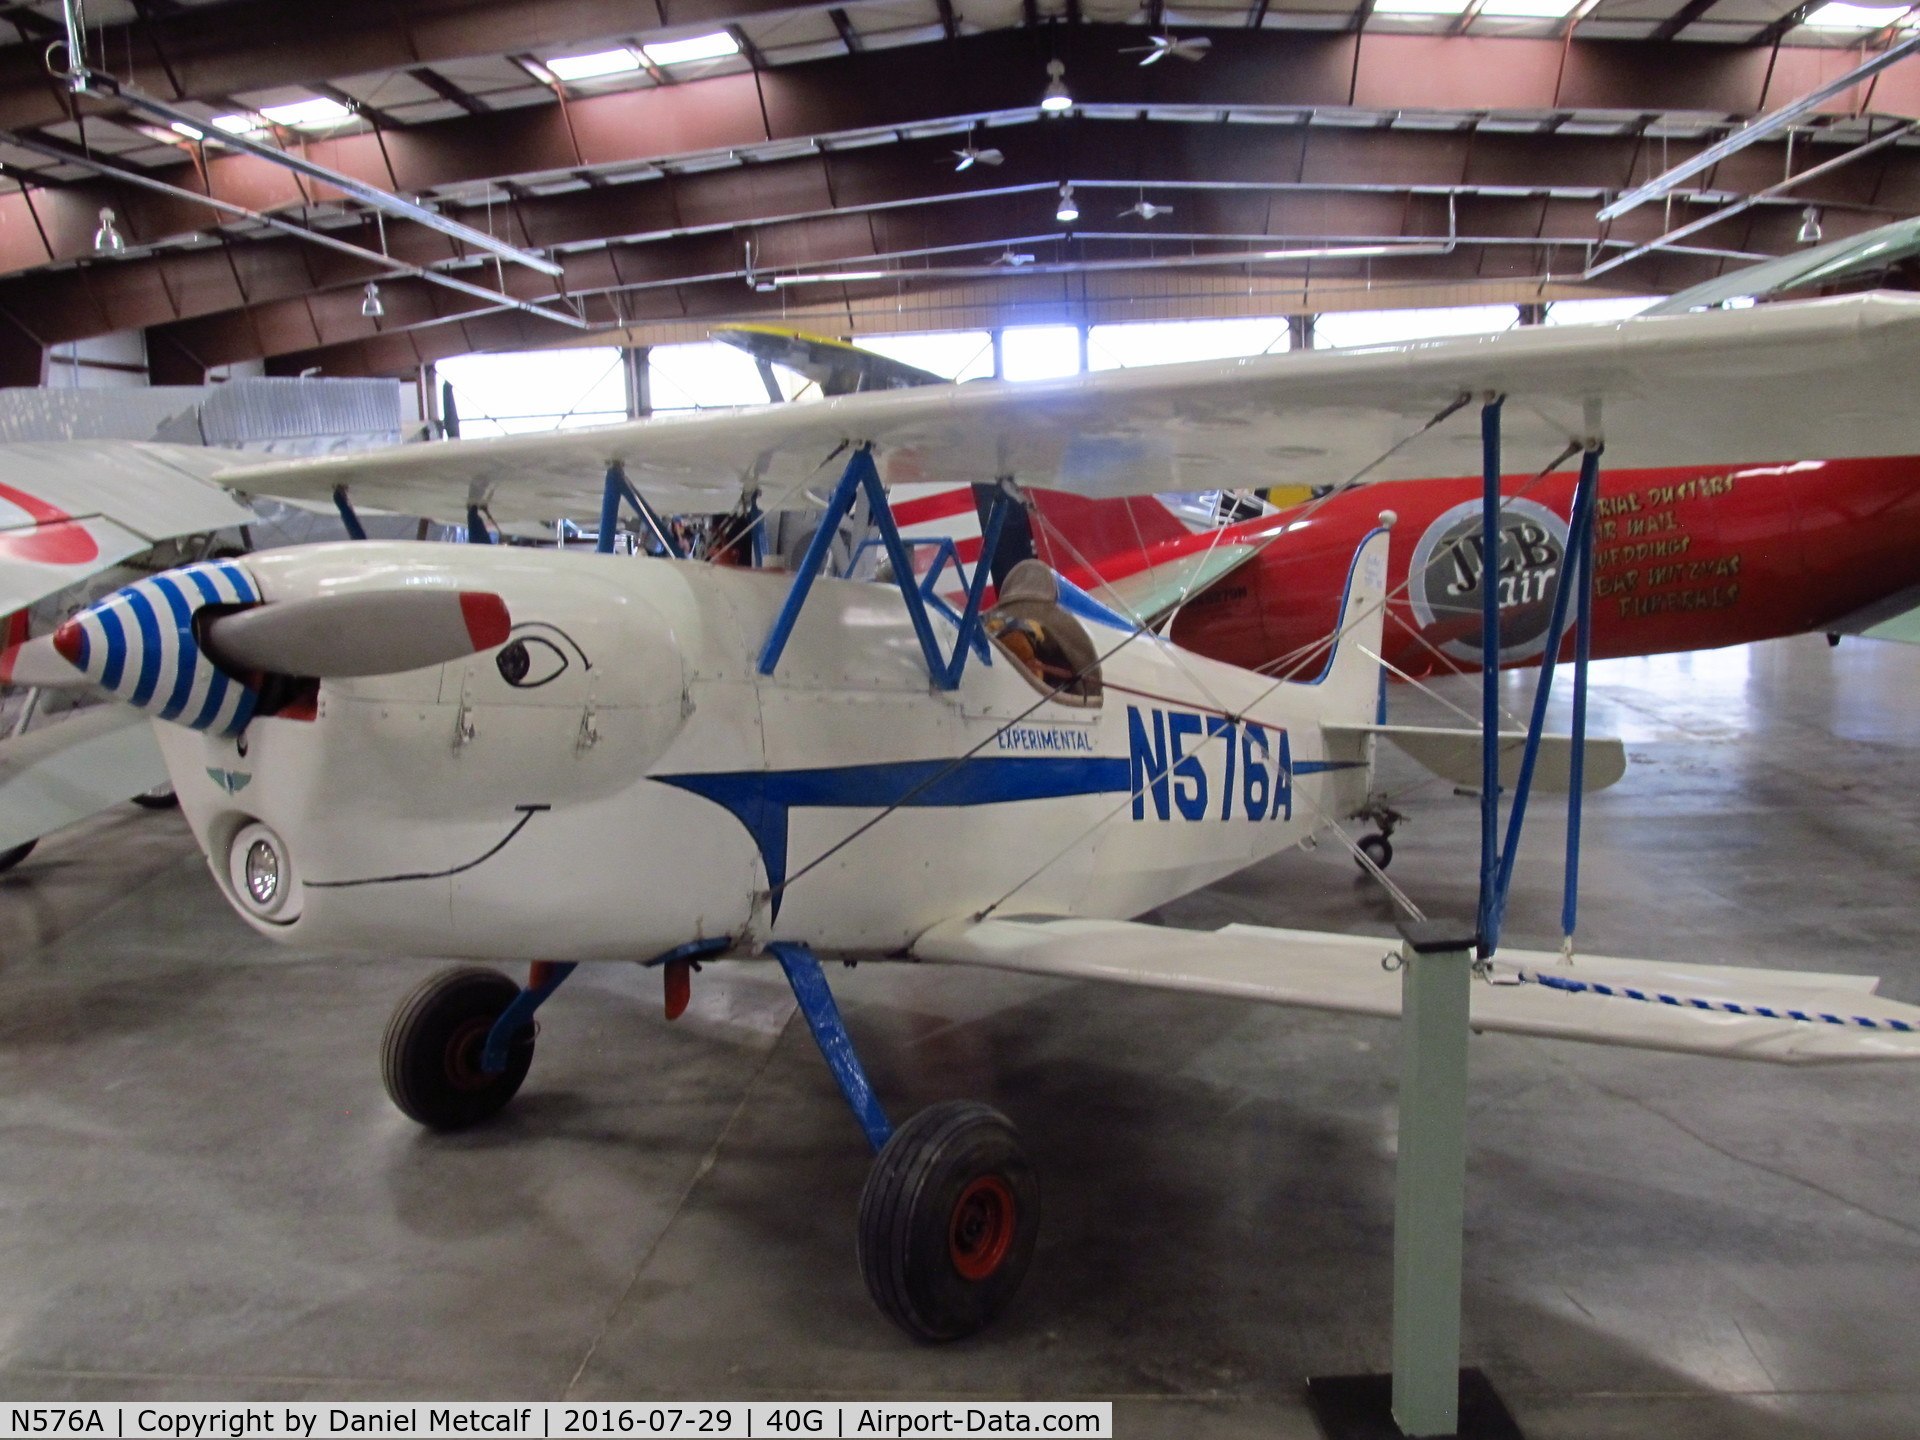 N576A, 1964 Bretthauer Lewann Biplane DD-1 C/N 1, Planes of Fame Air Museum (Valle, AZ Location)